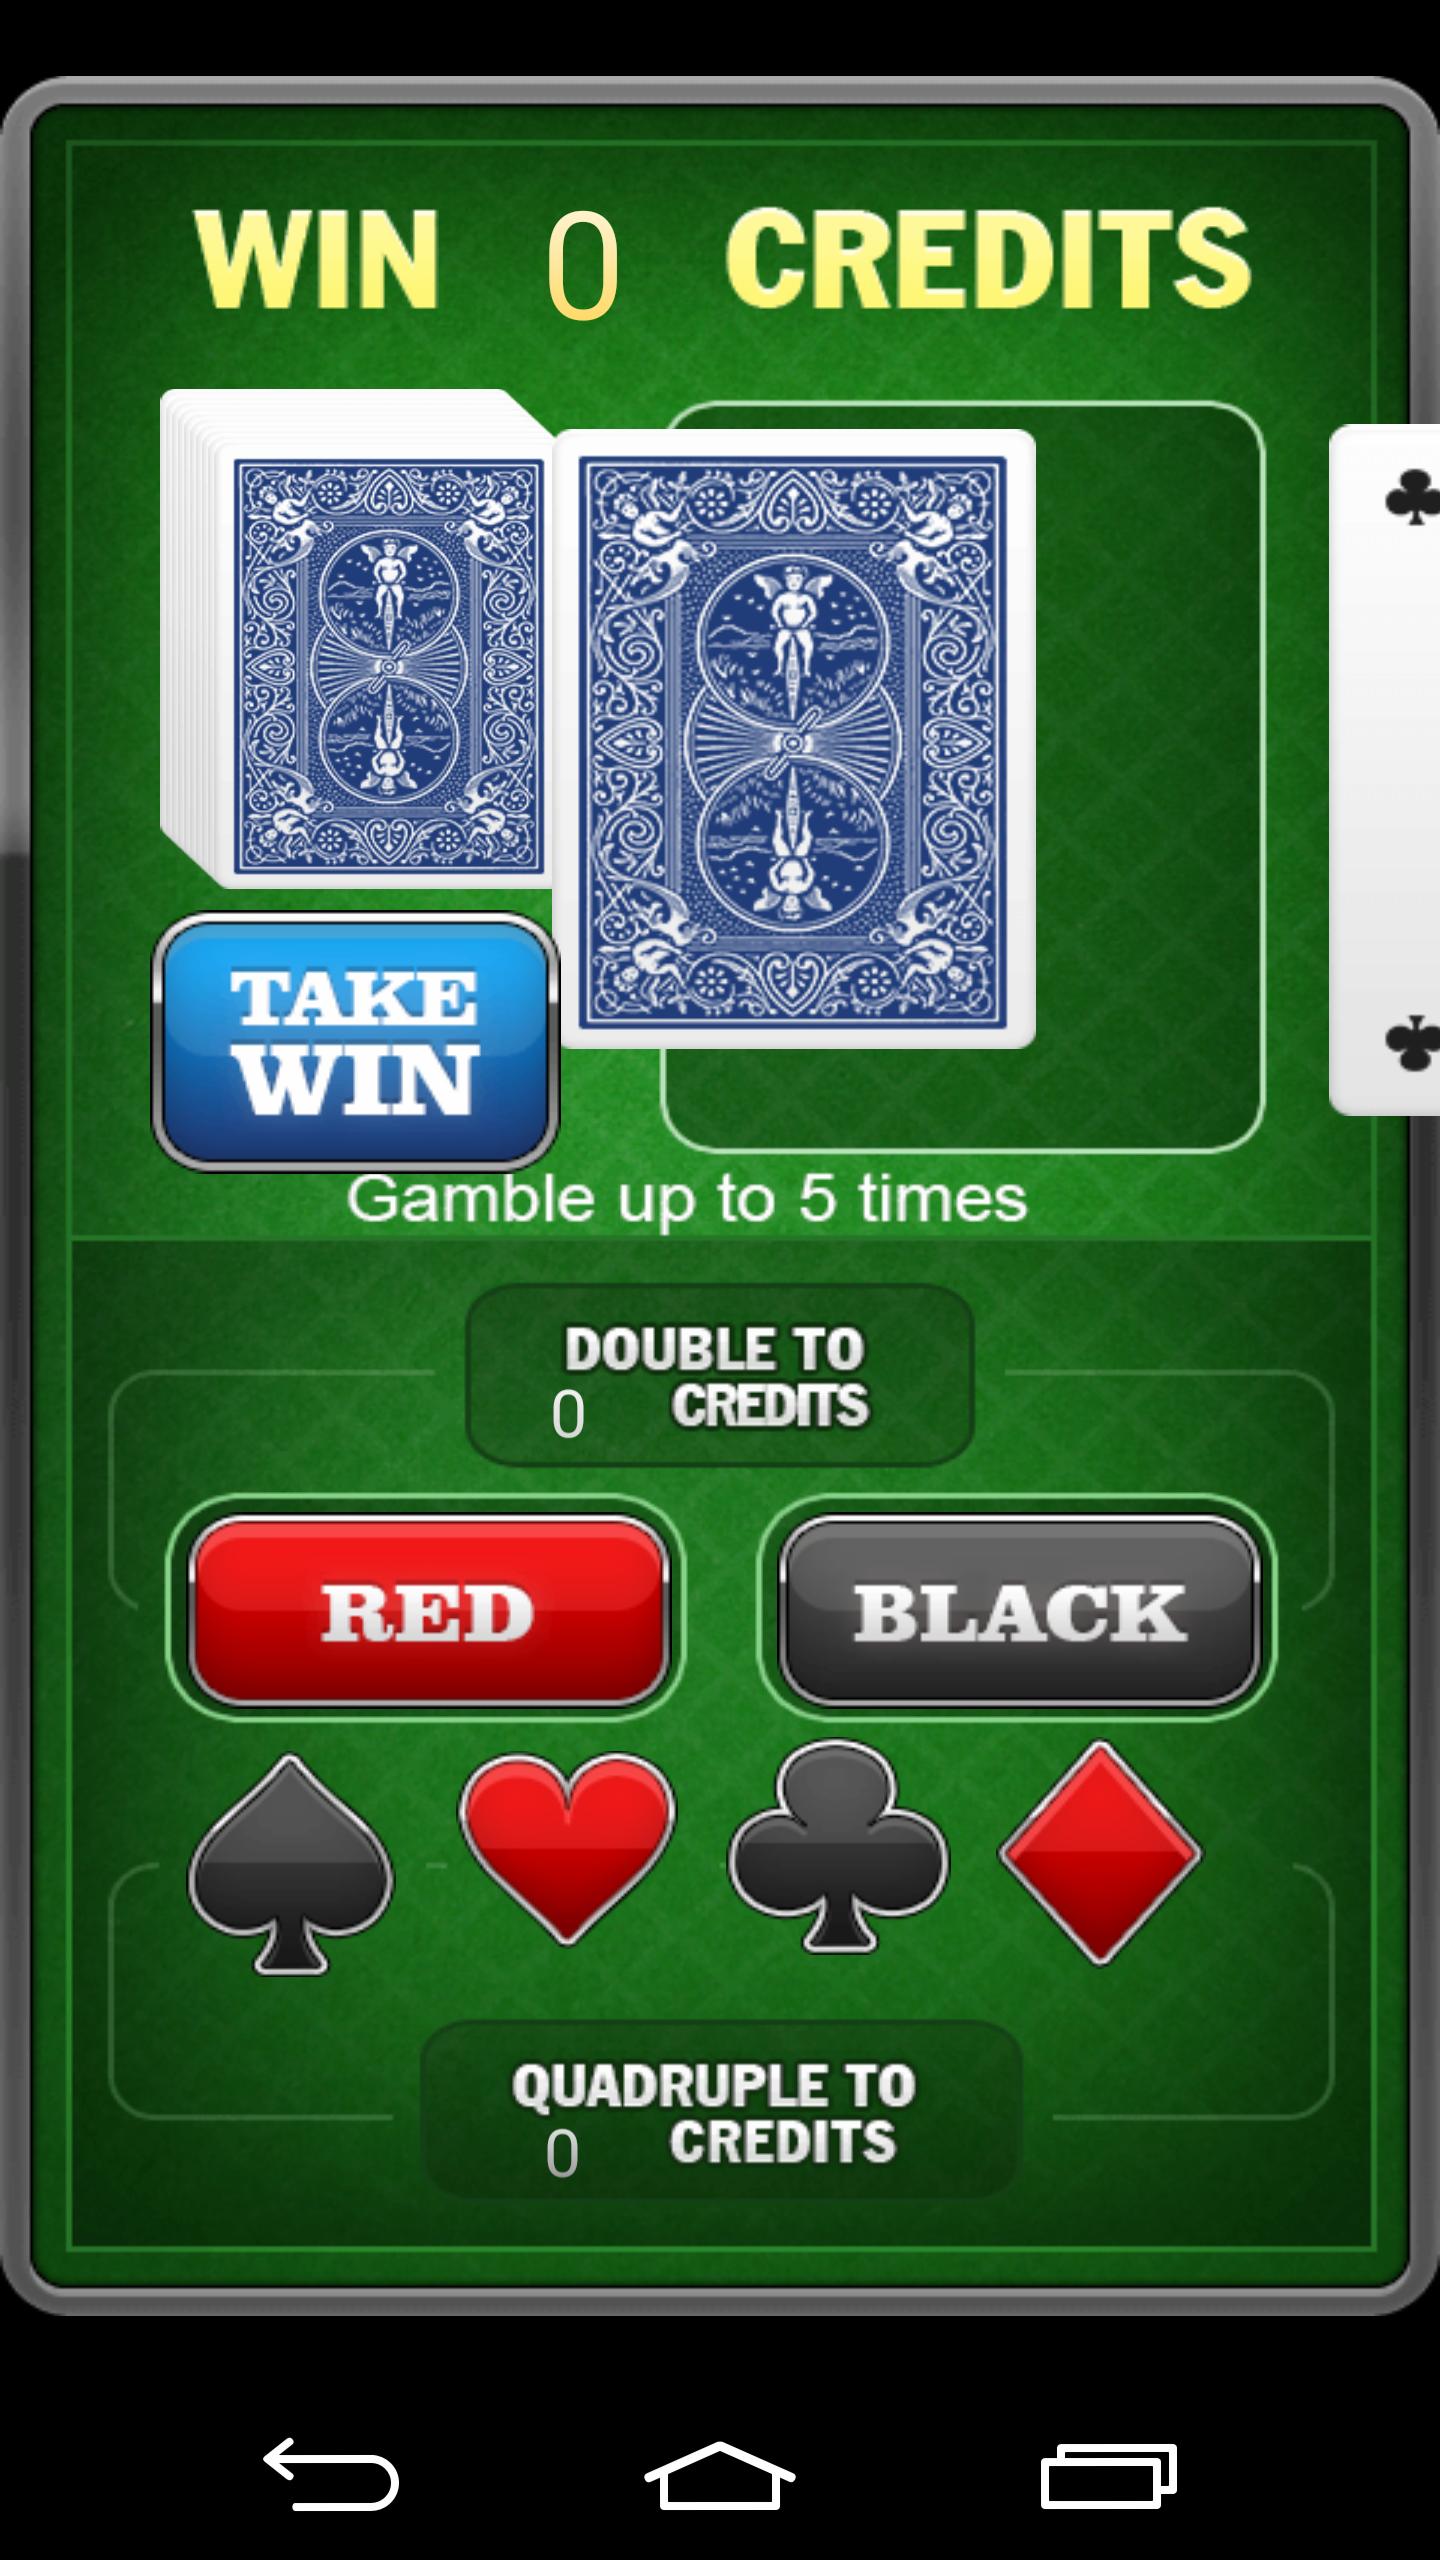 Millionaire Slot Machine